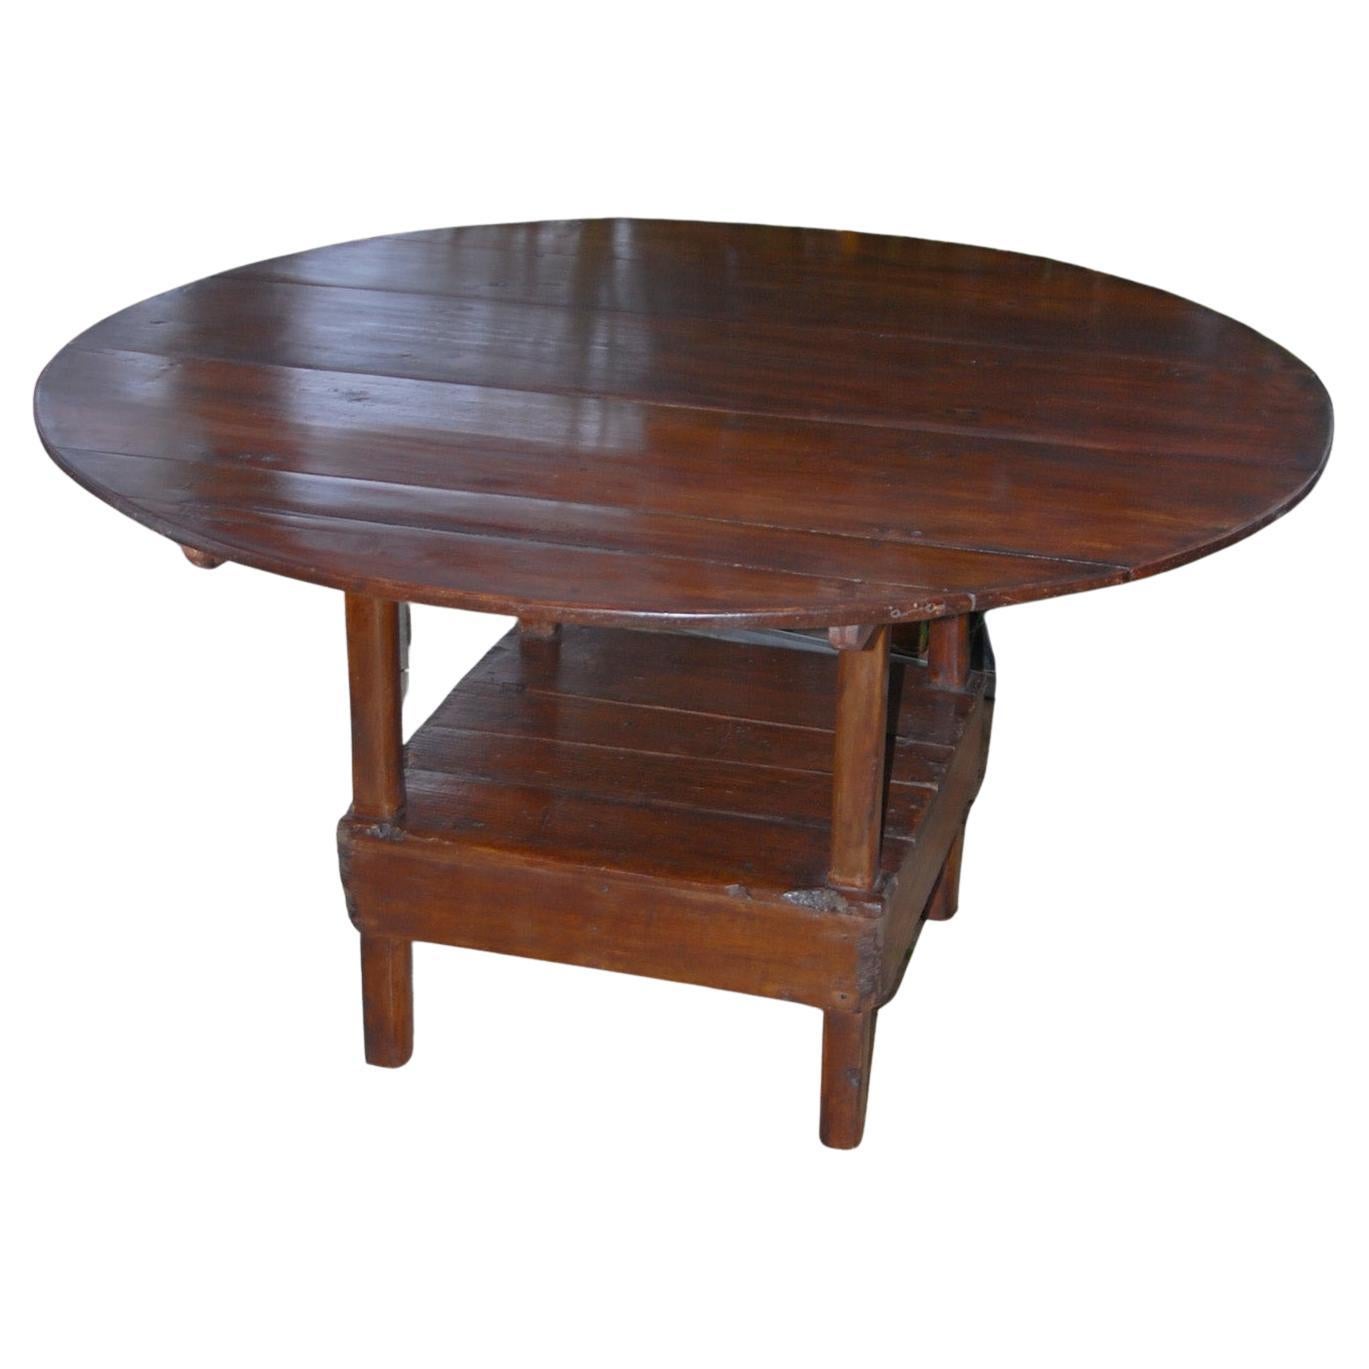 Chaise de table de campagne métamorphique américaine du début du XIXe siècle